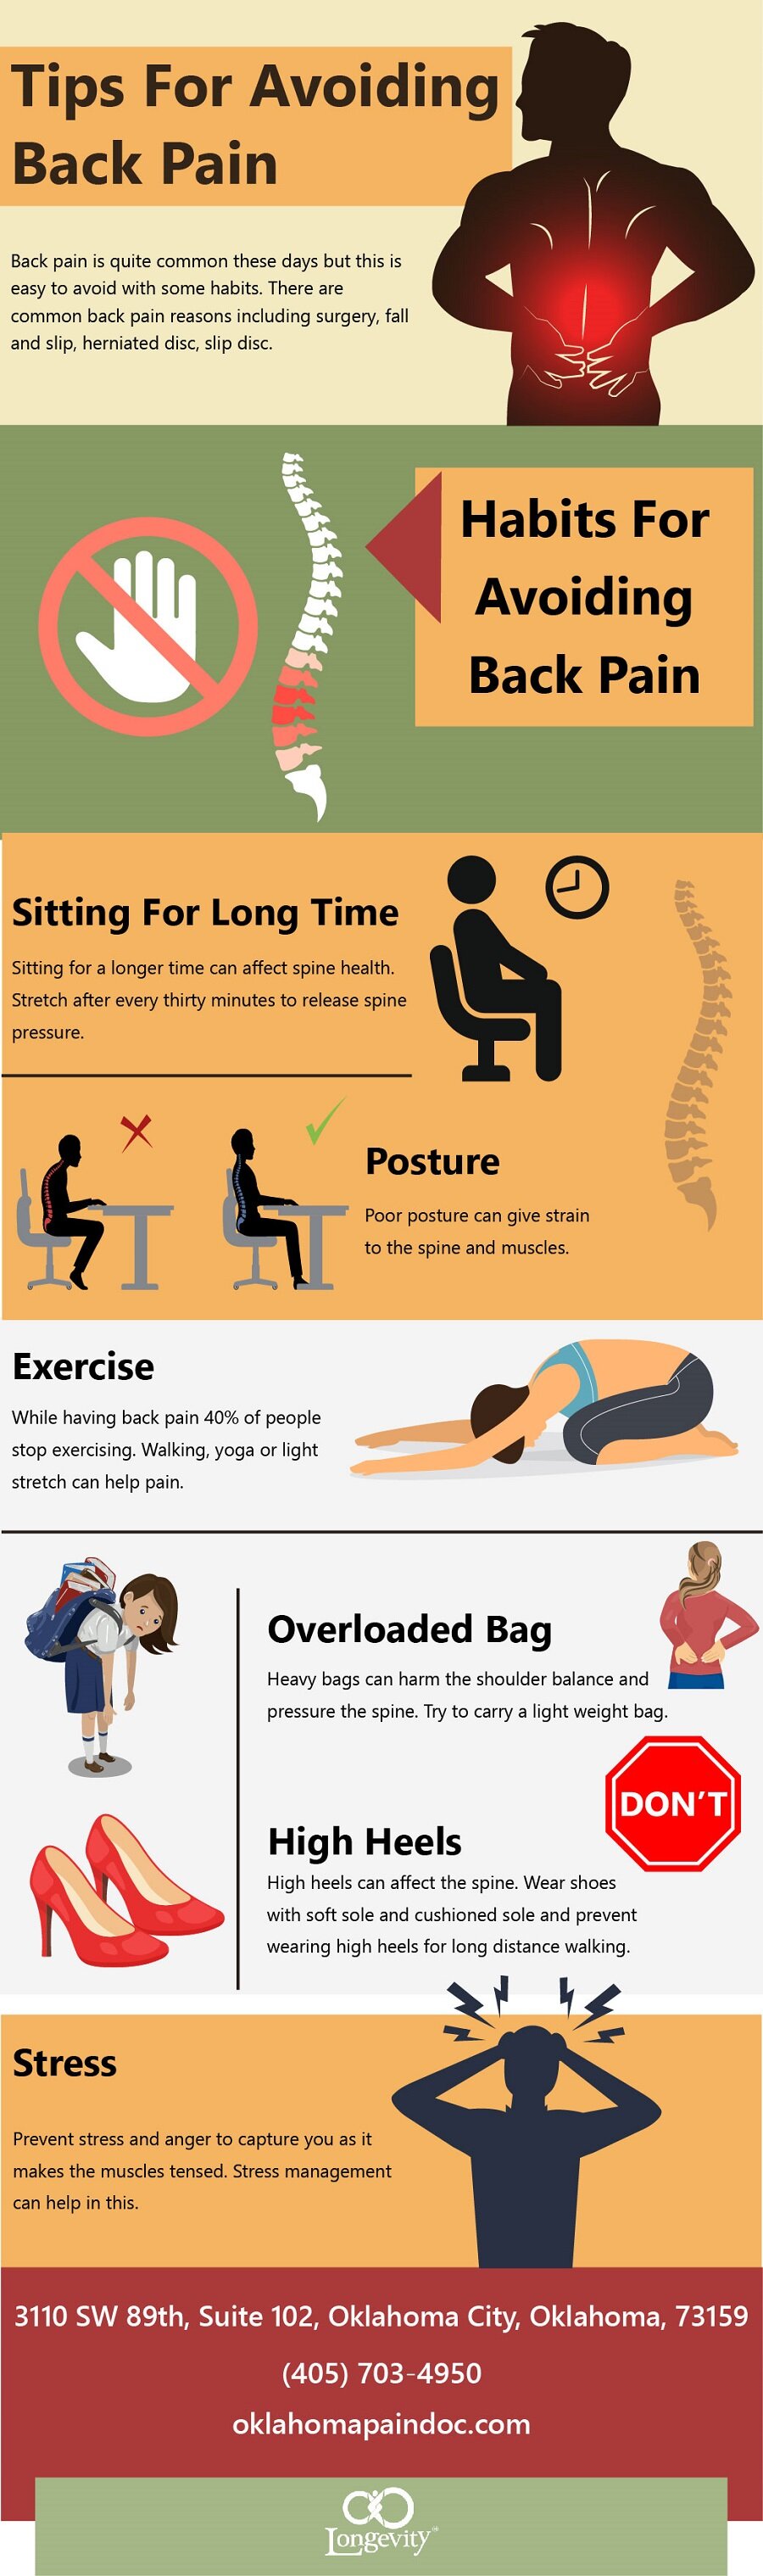 Tips For Avoiding back pain (Infographic)Tips For Avoiding back pain (Infographic)